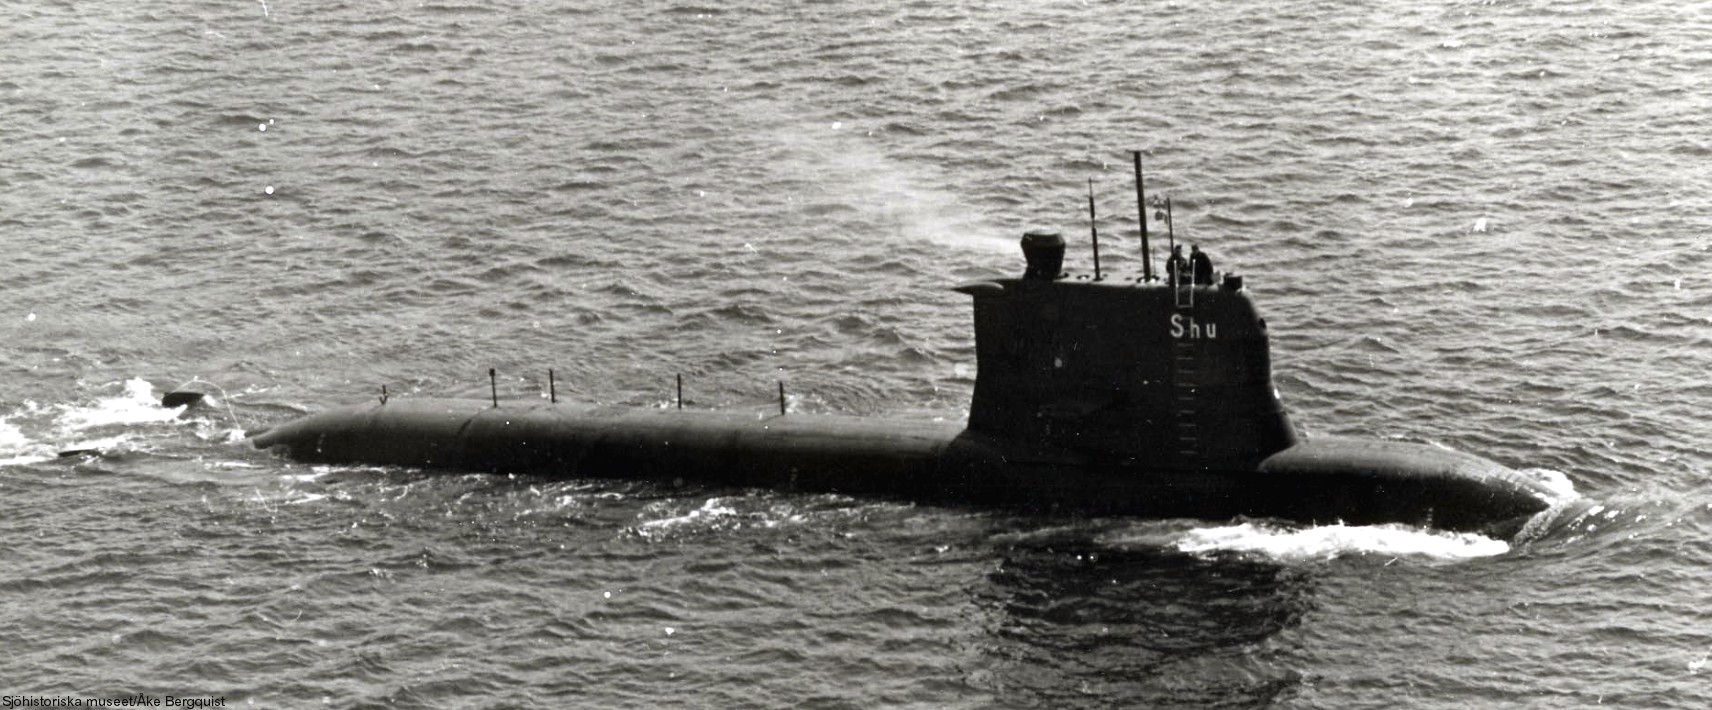 hswms hms sjöhunden shu sjöormen a11 class submarine ssk swedish navy svenska marinen försvarsmakten 04